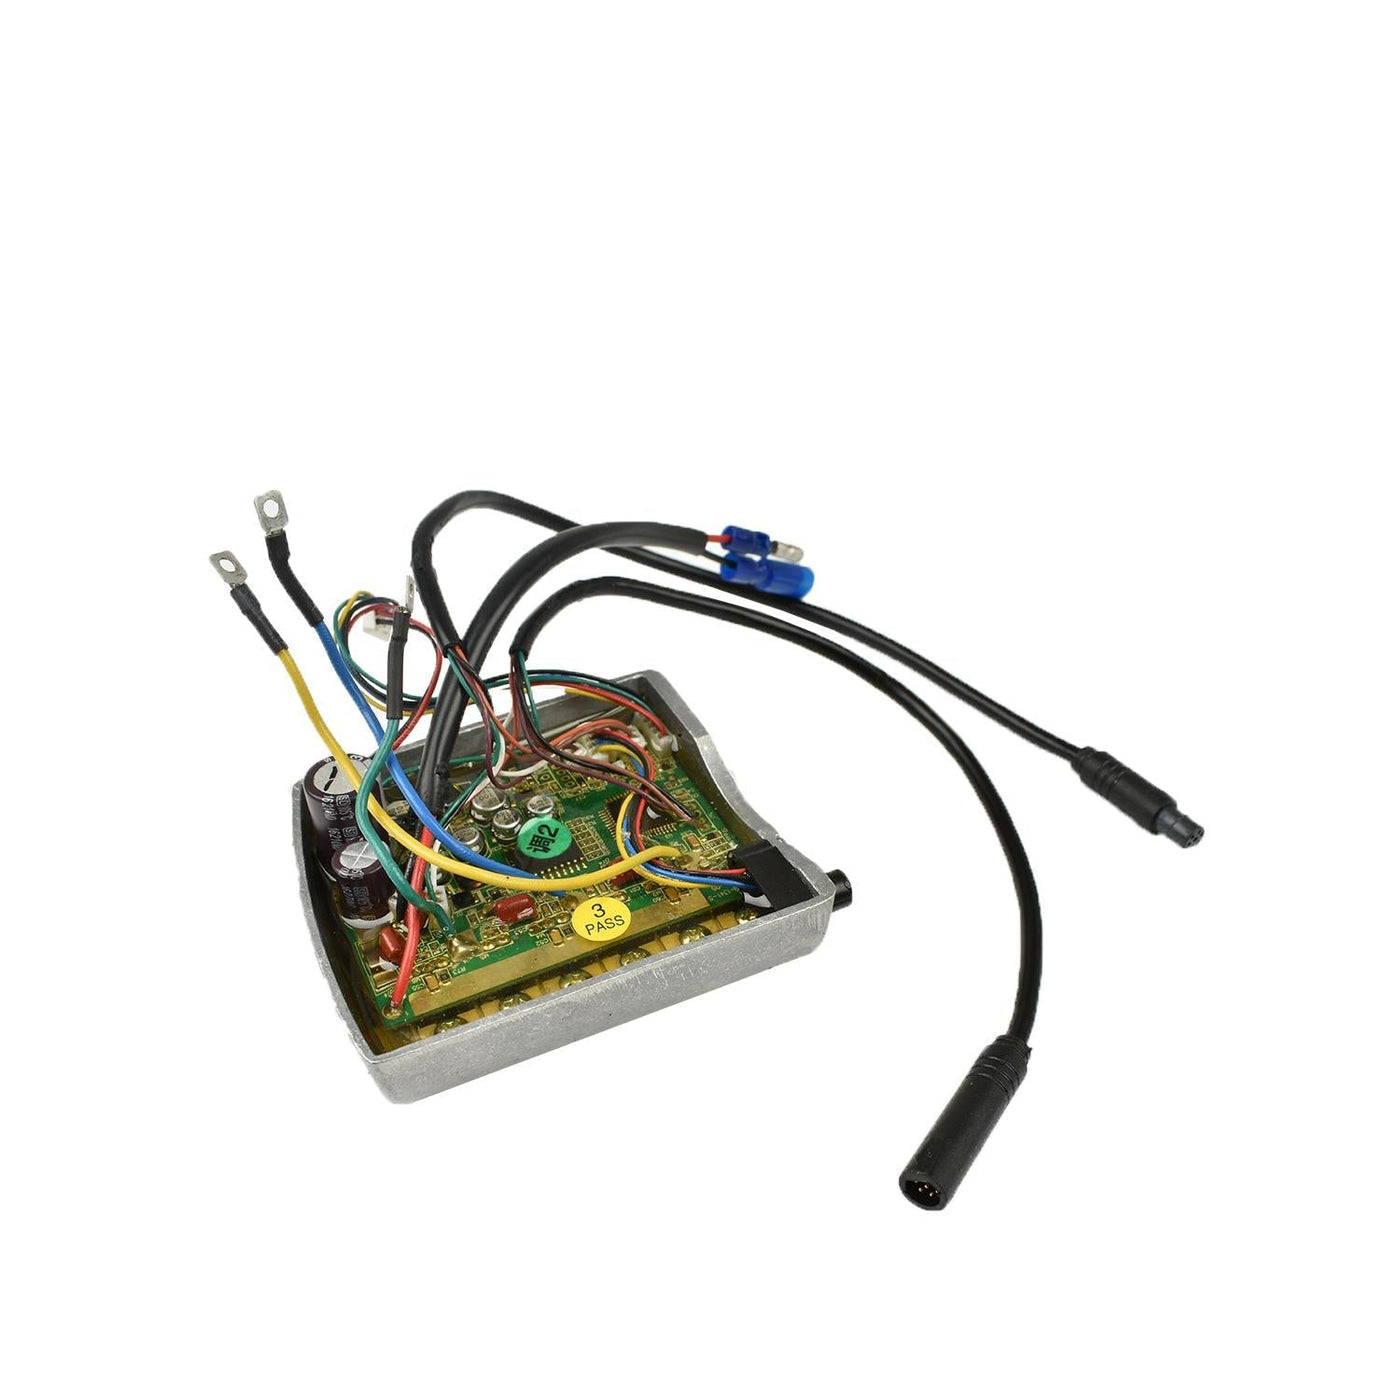 TSDZ2 Controller 8-pin female connector